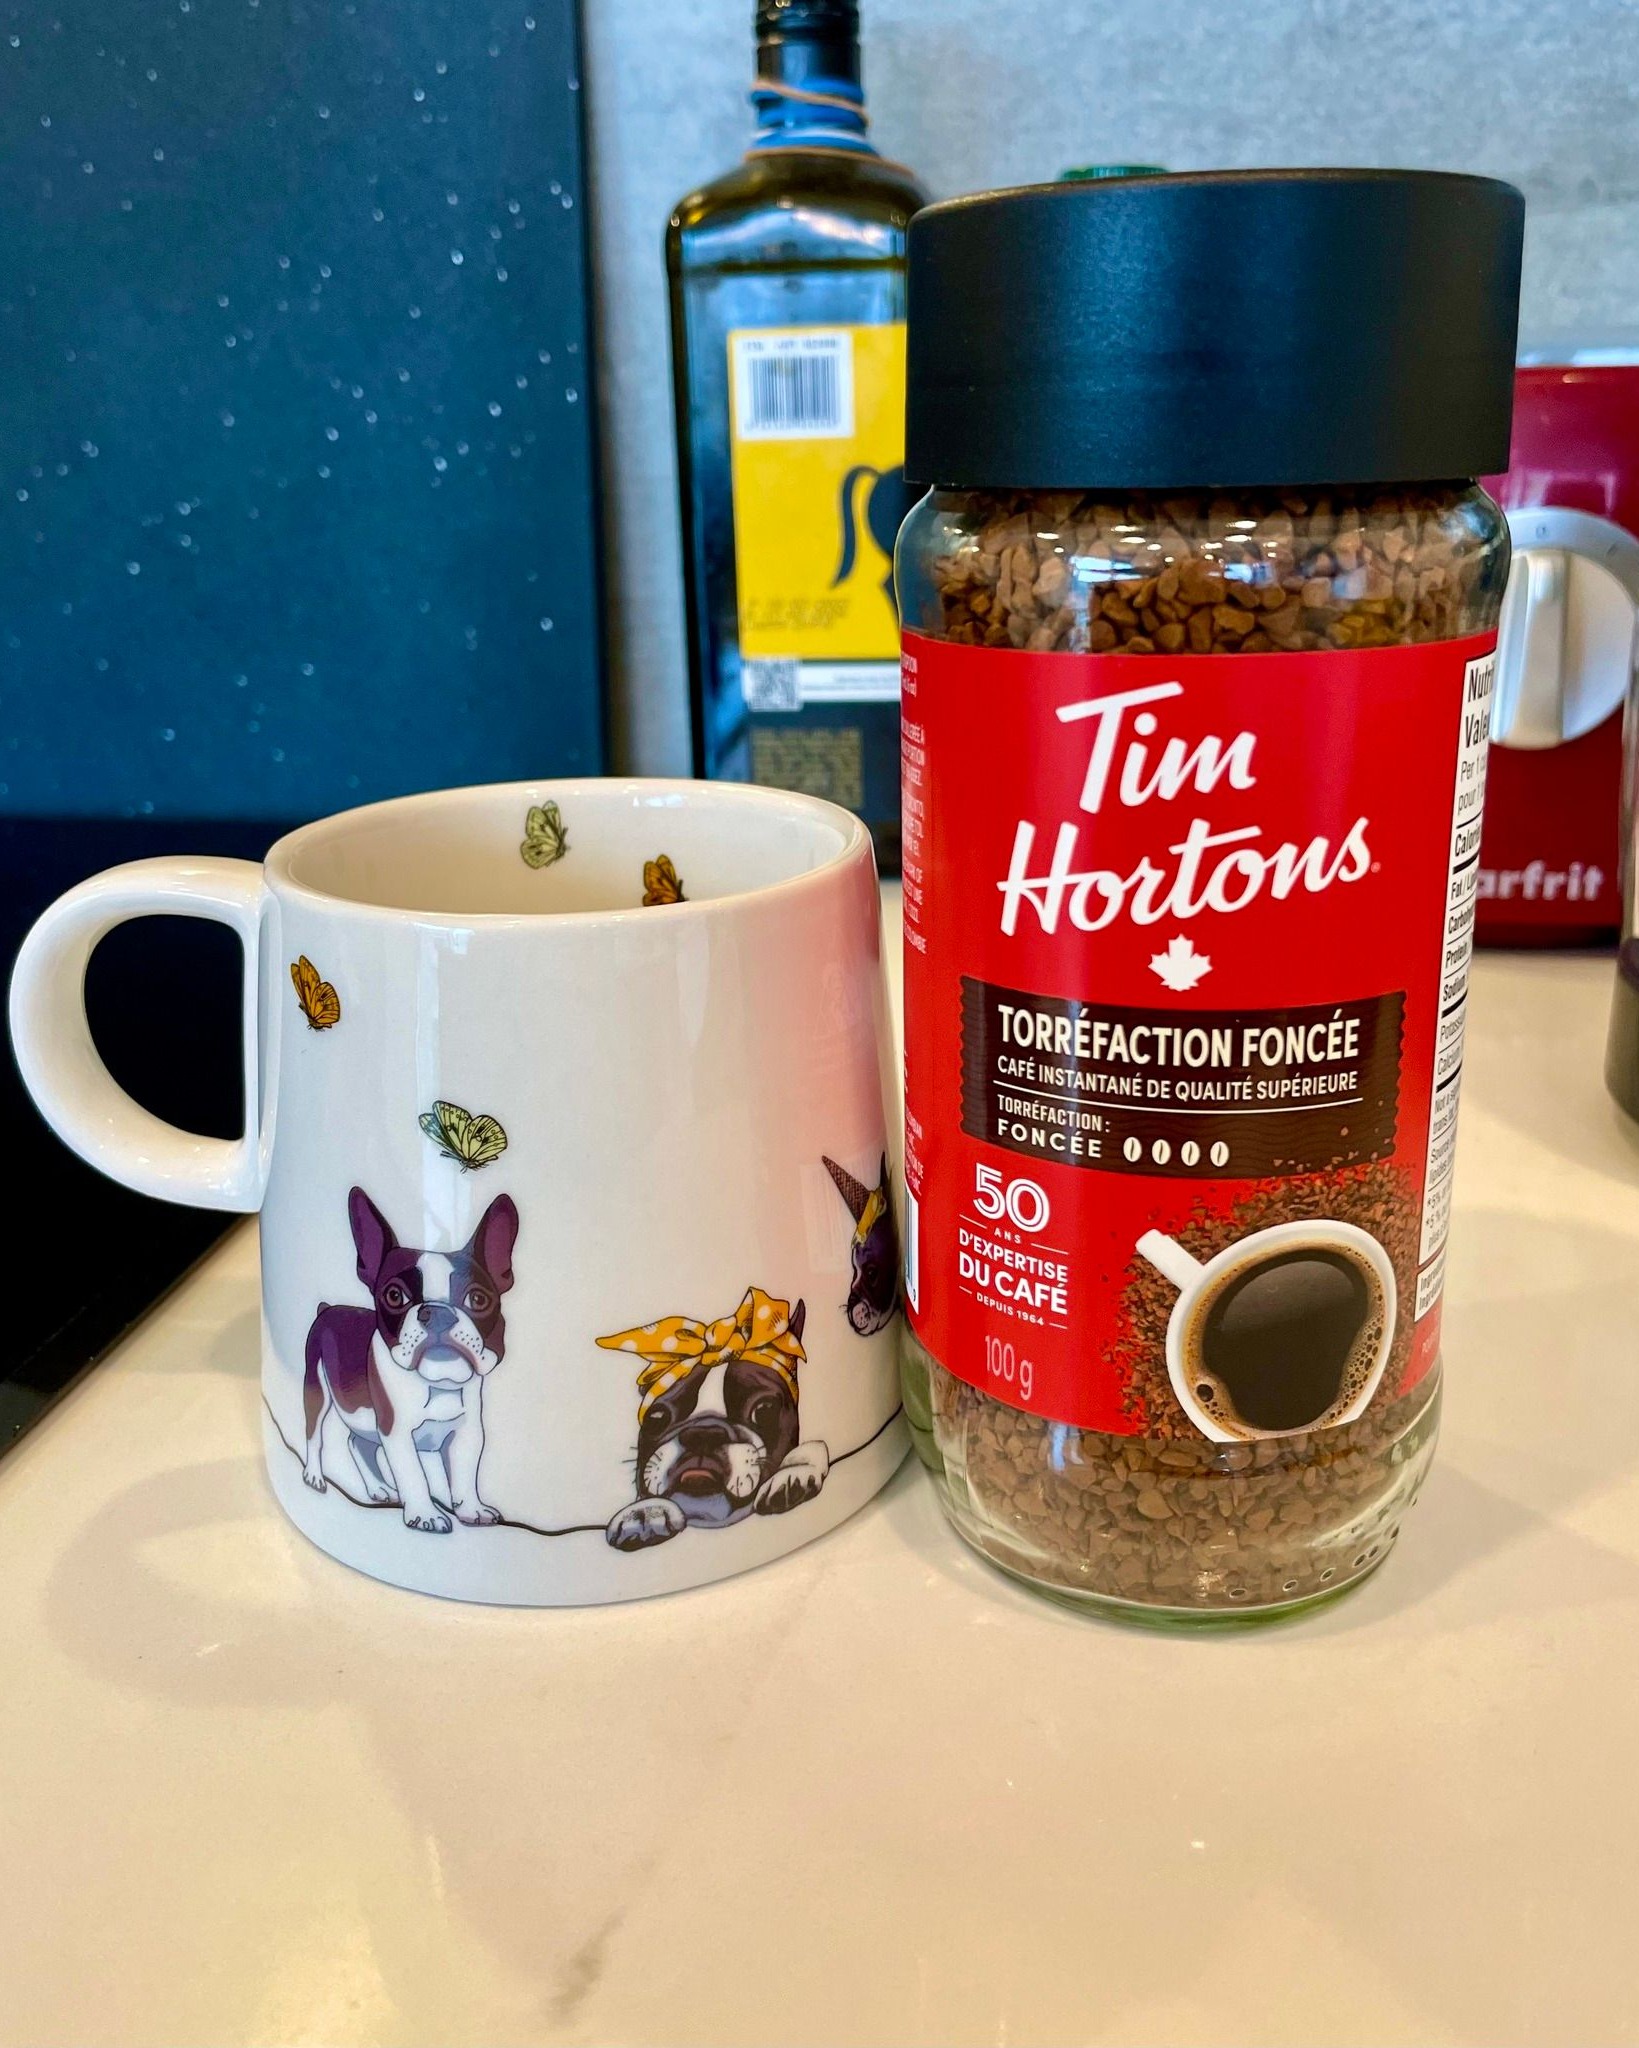 どうもC&C Study です今日、２月２０日はカナダの祝日「Family Day」なのでコーヒーでも飲んでゆっくりしたいと思います最近はもっぱら Tim Hortons のインスタントコーヒーを飲んでいます。Tim Hortonsはカナダにしかないファストフード店です。ちなみにマグカップは前回紹介したことがある紅茶屋「Murchie's 」で買いました！みなさんはコーヒーにミルクと砂糖入れますか？ーーーーーーーーーーーーーーーーーーーーーーーーーーーInstagram、ホームページもよろしくお願いします。Instagram： c.cstudyホームページ：https://candc.spazio.fun#ビクトリア #カナダ留学 #海外留学 #カナダ #カナダ生活 #教科 #高校 #海外高校 #海外高校留学 #ビクトリア留学 #ビクトリア留学生活 #ビクトリア留学エージェント#coffee #coffeetime #コーヒー #インスタントコーヒー #timhortons #timhortonscanada #timhortonscoffee #familyday #familydays